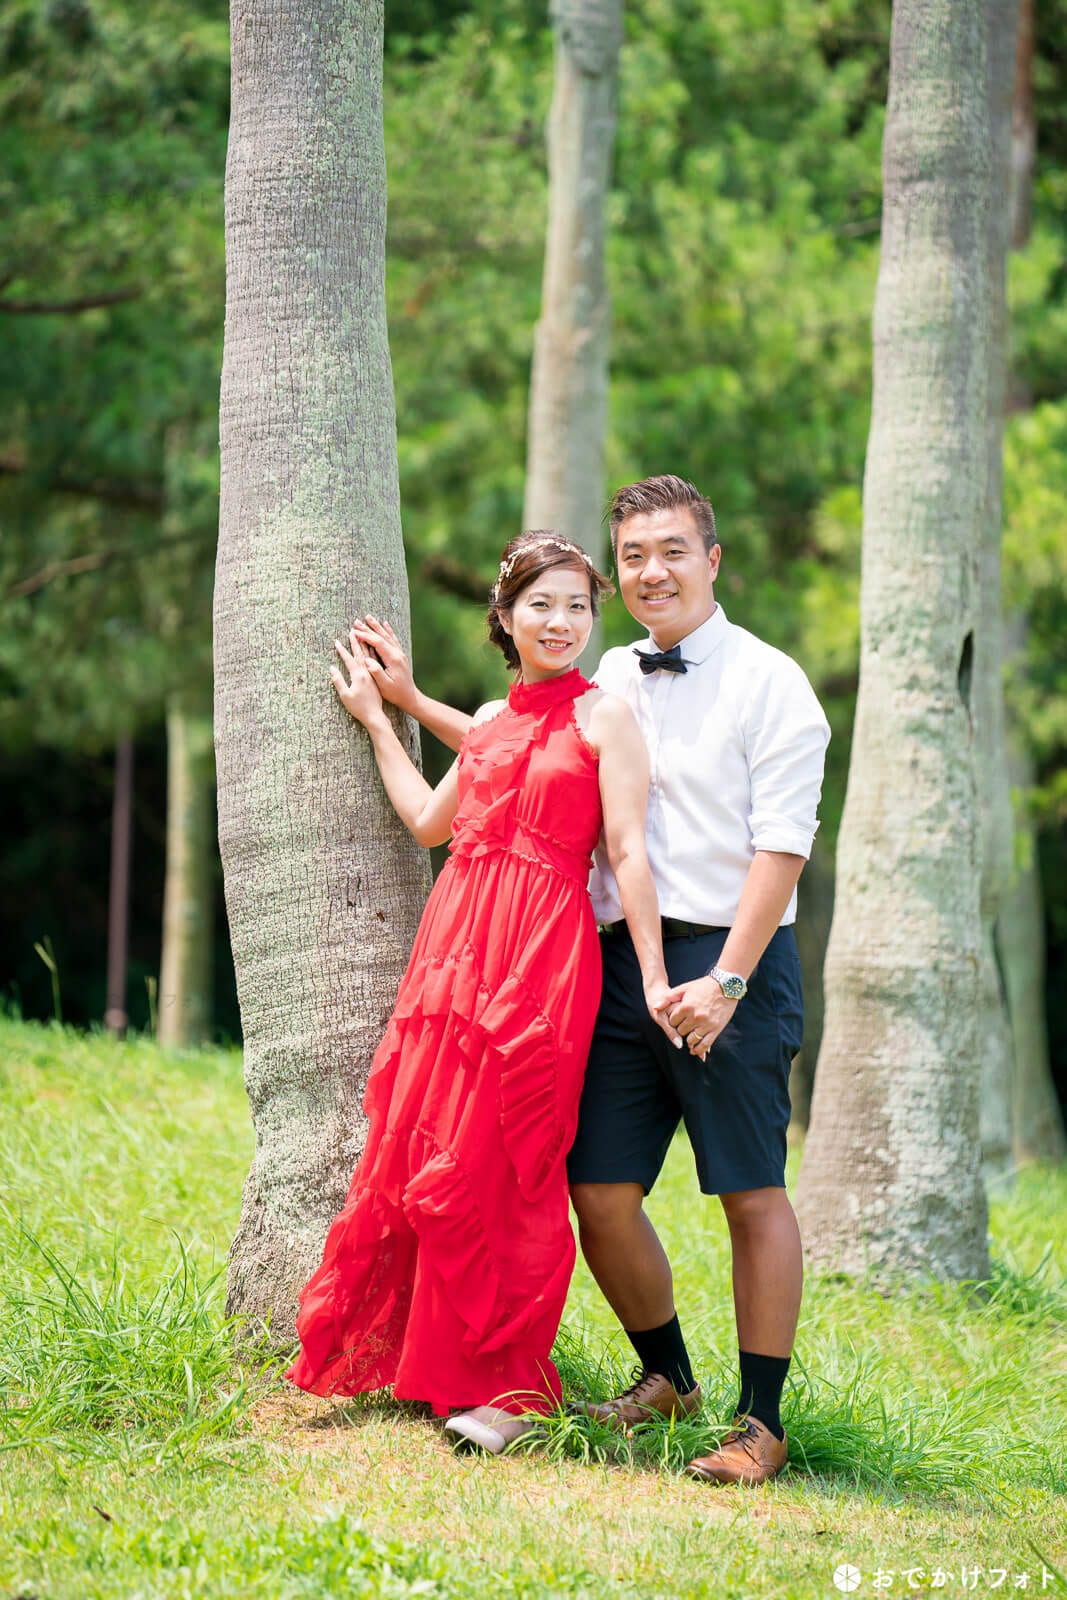 小戸公園で結婚10周年記念の家族写真